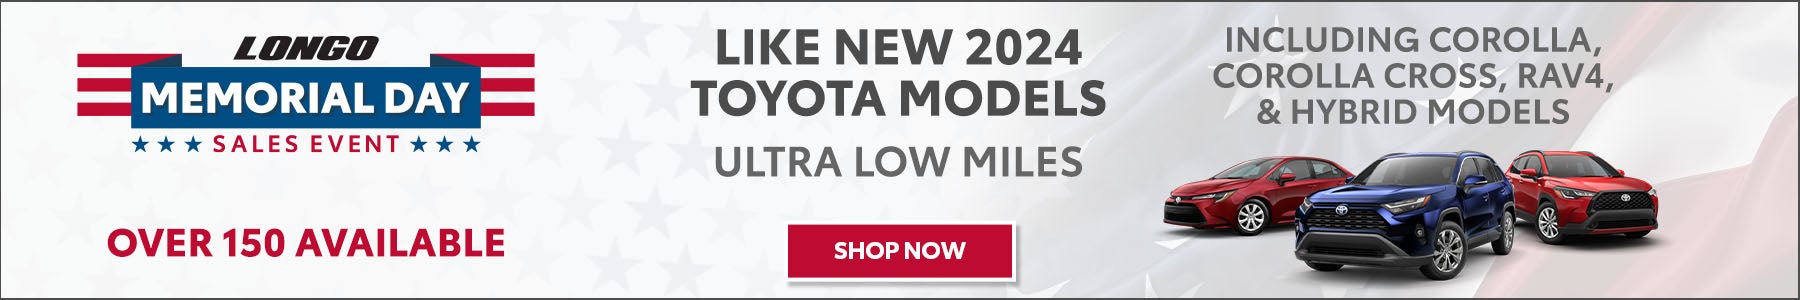 Like New Toyota Models